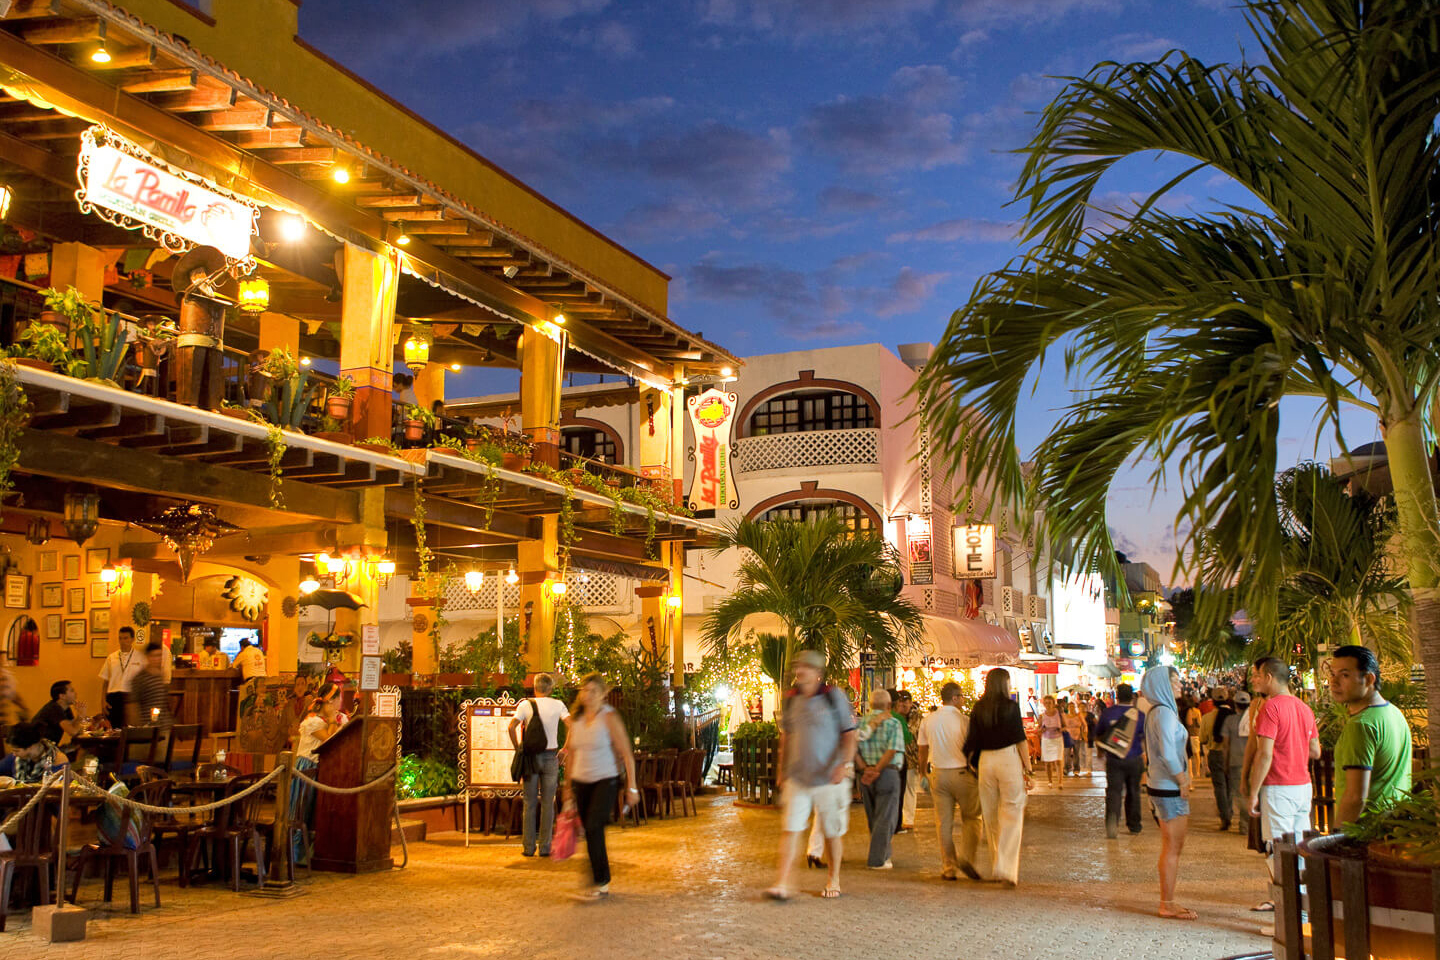 Dónde esta Playa Del Carmen, mapa y guía - Tips Para Tu Viaje